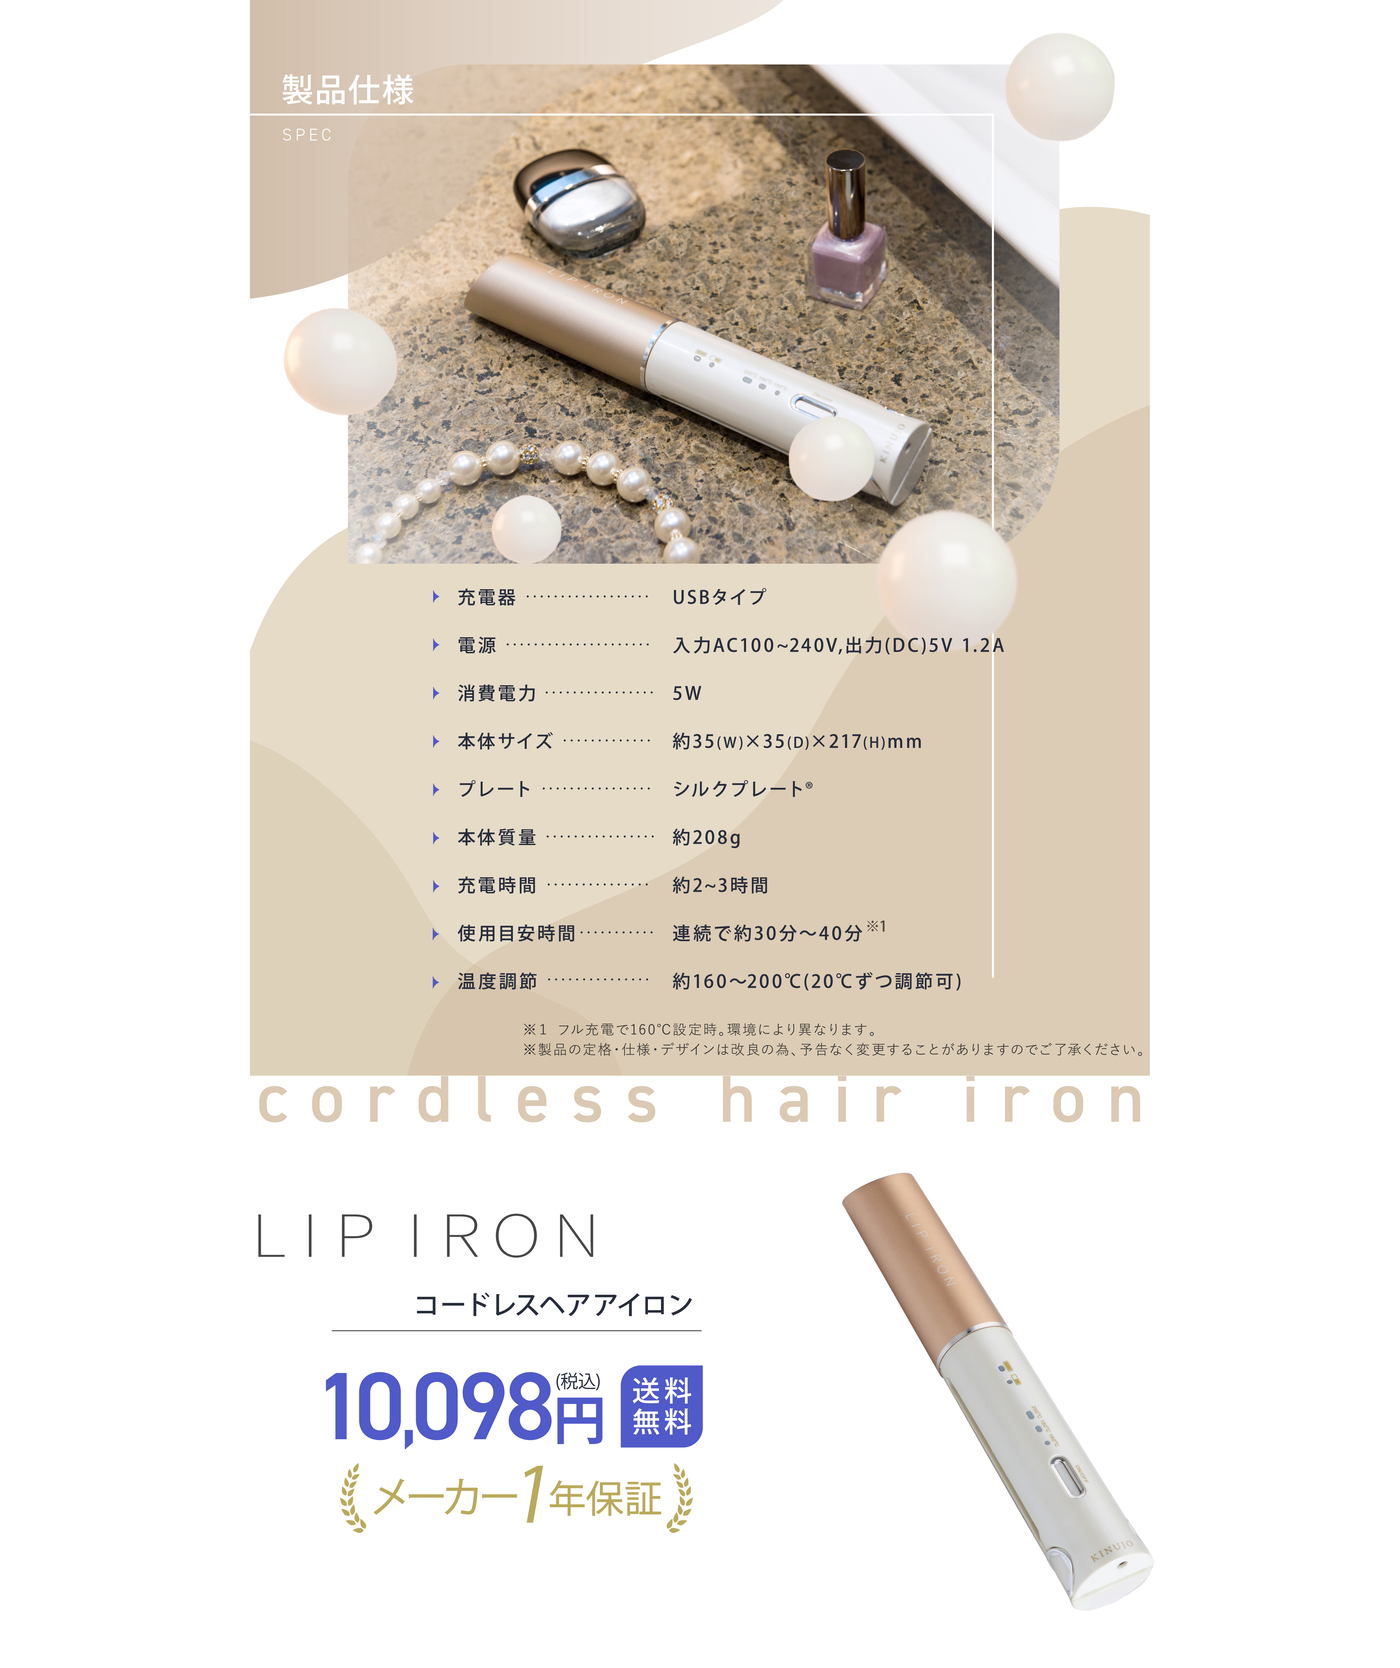 リップアイロン~LIP IRON~ -コードレスアイロン-